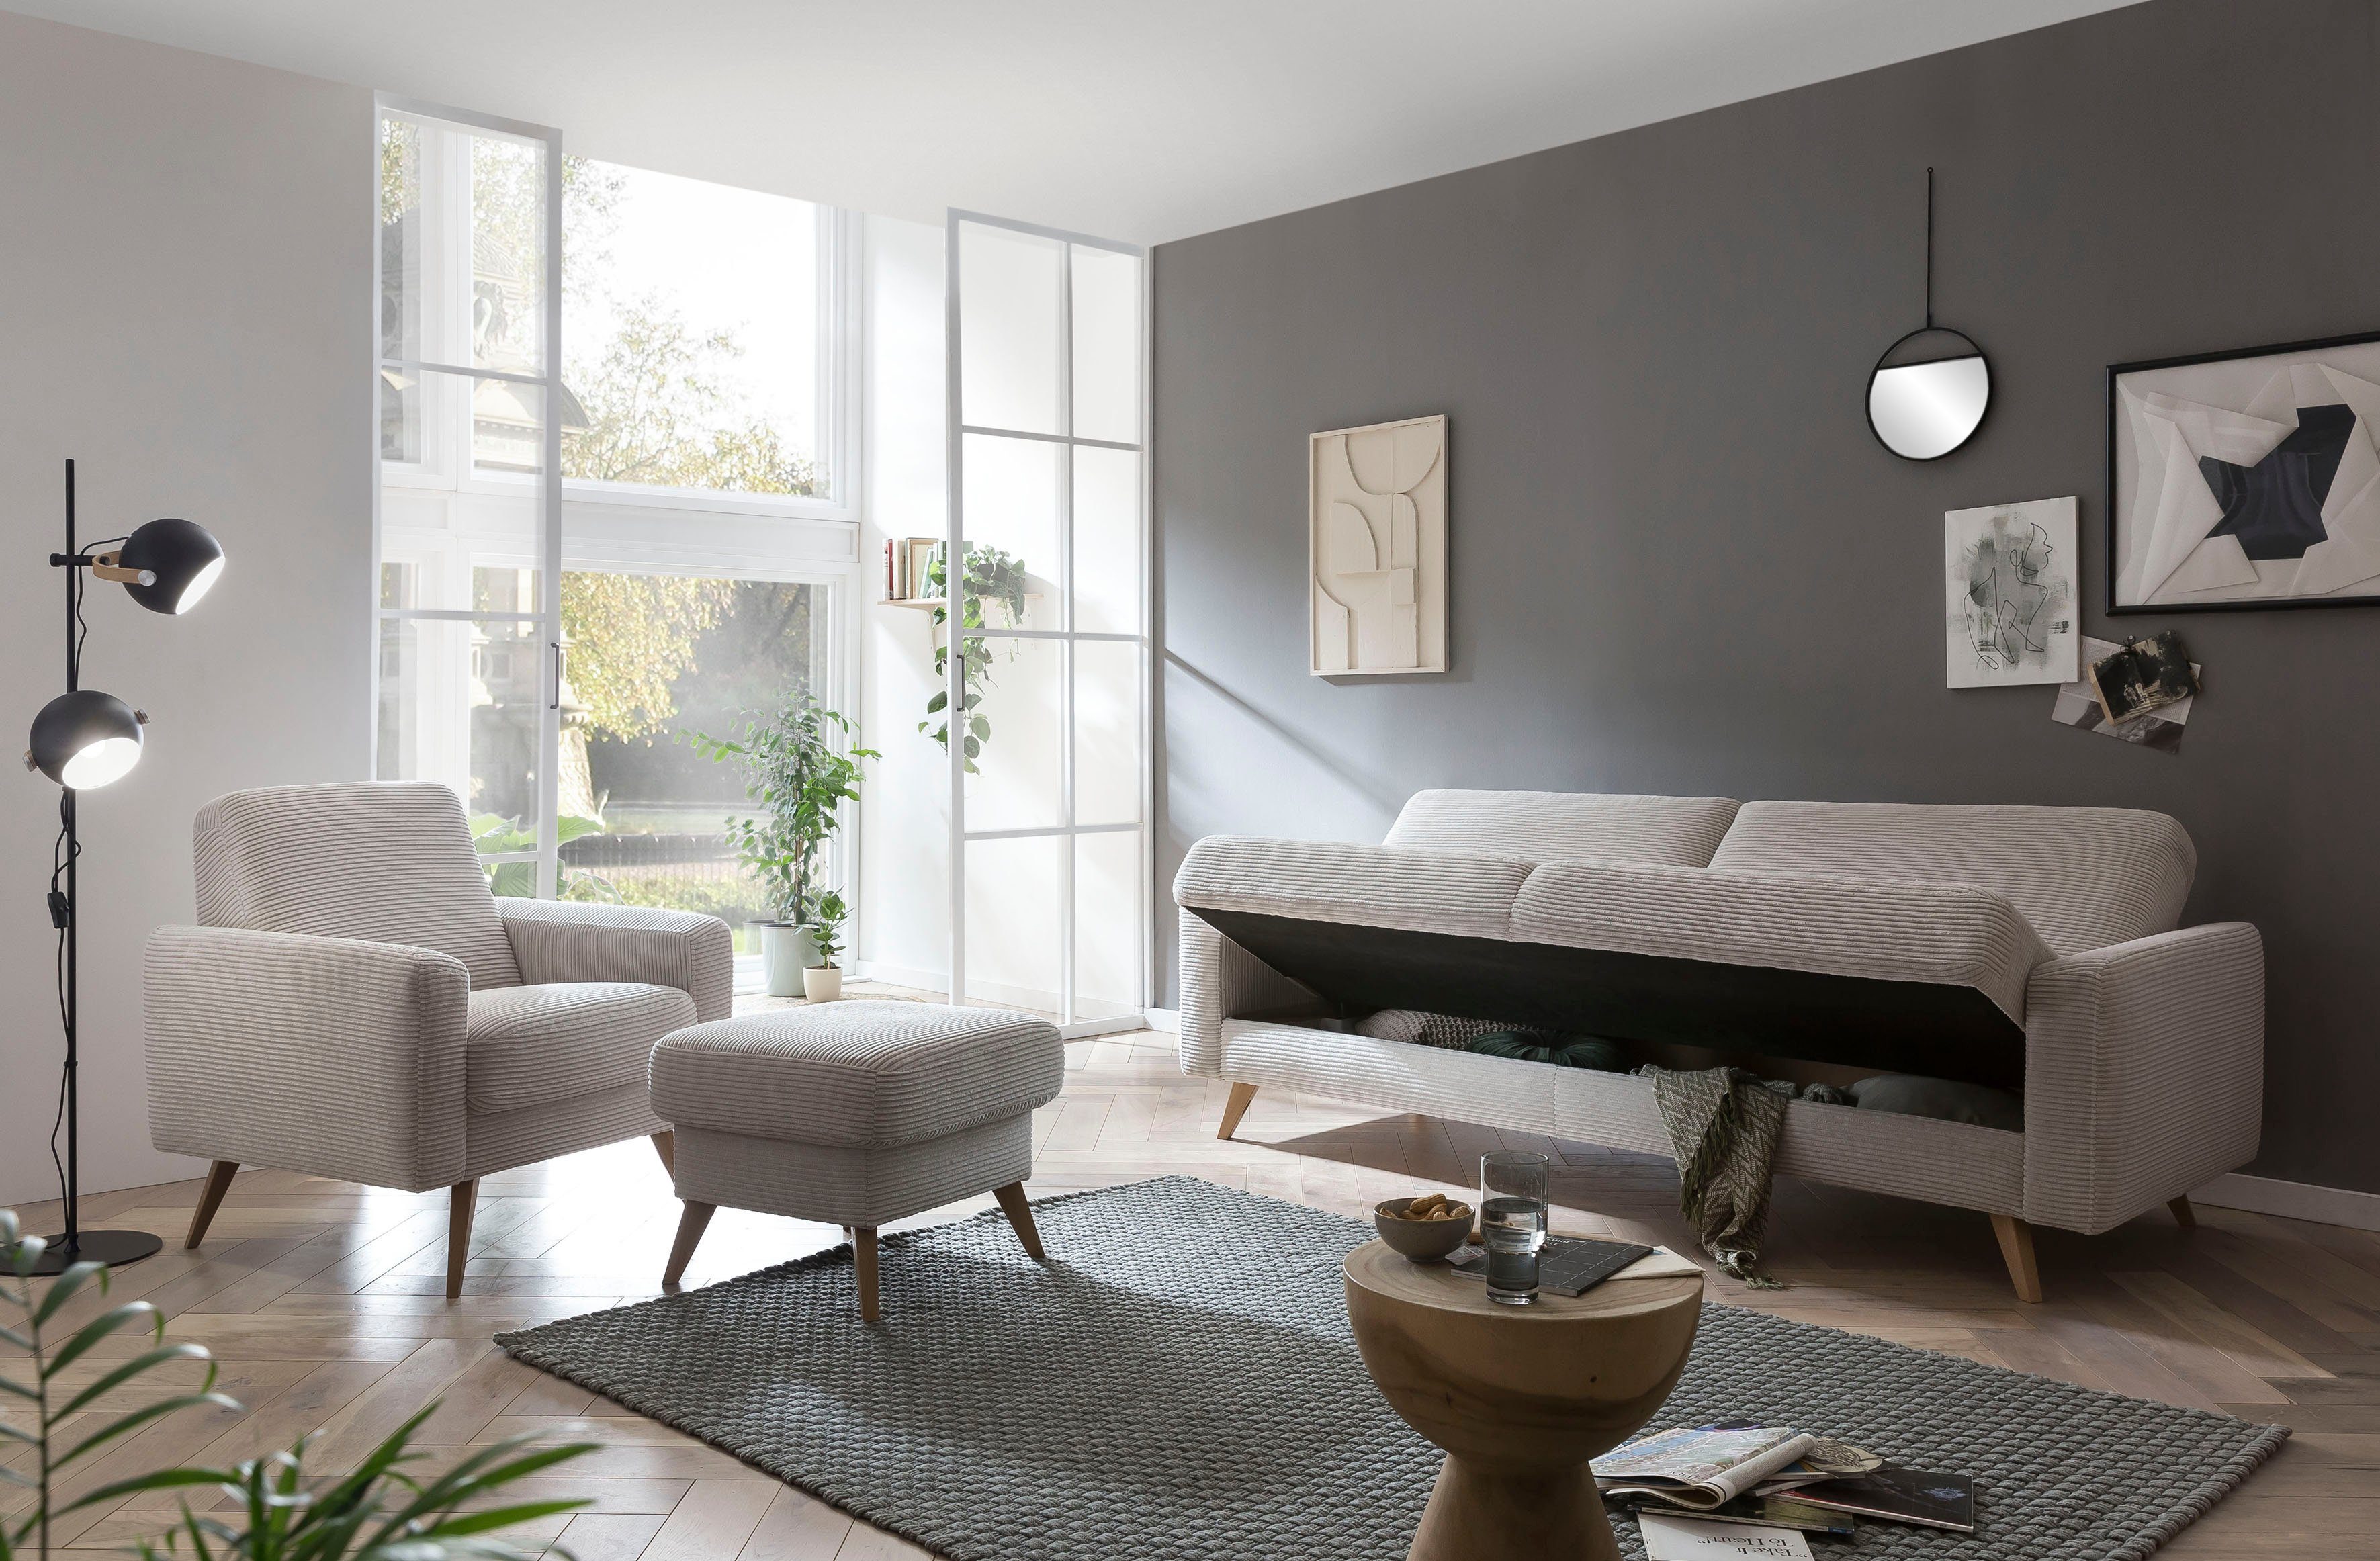 exxpo - sofa fashion 3-Sitzer beige Inklusive Bettfunktion Samso, und Bettkasten